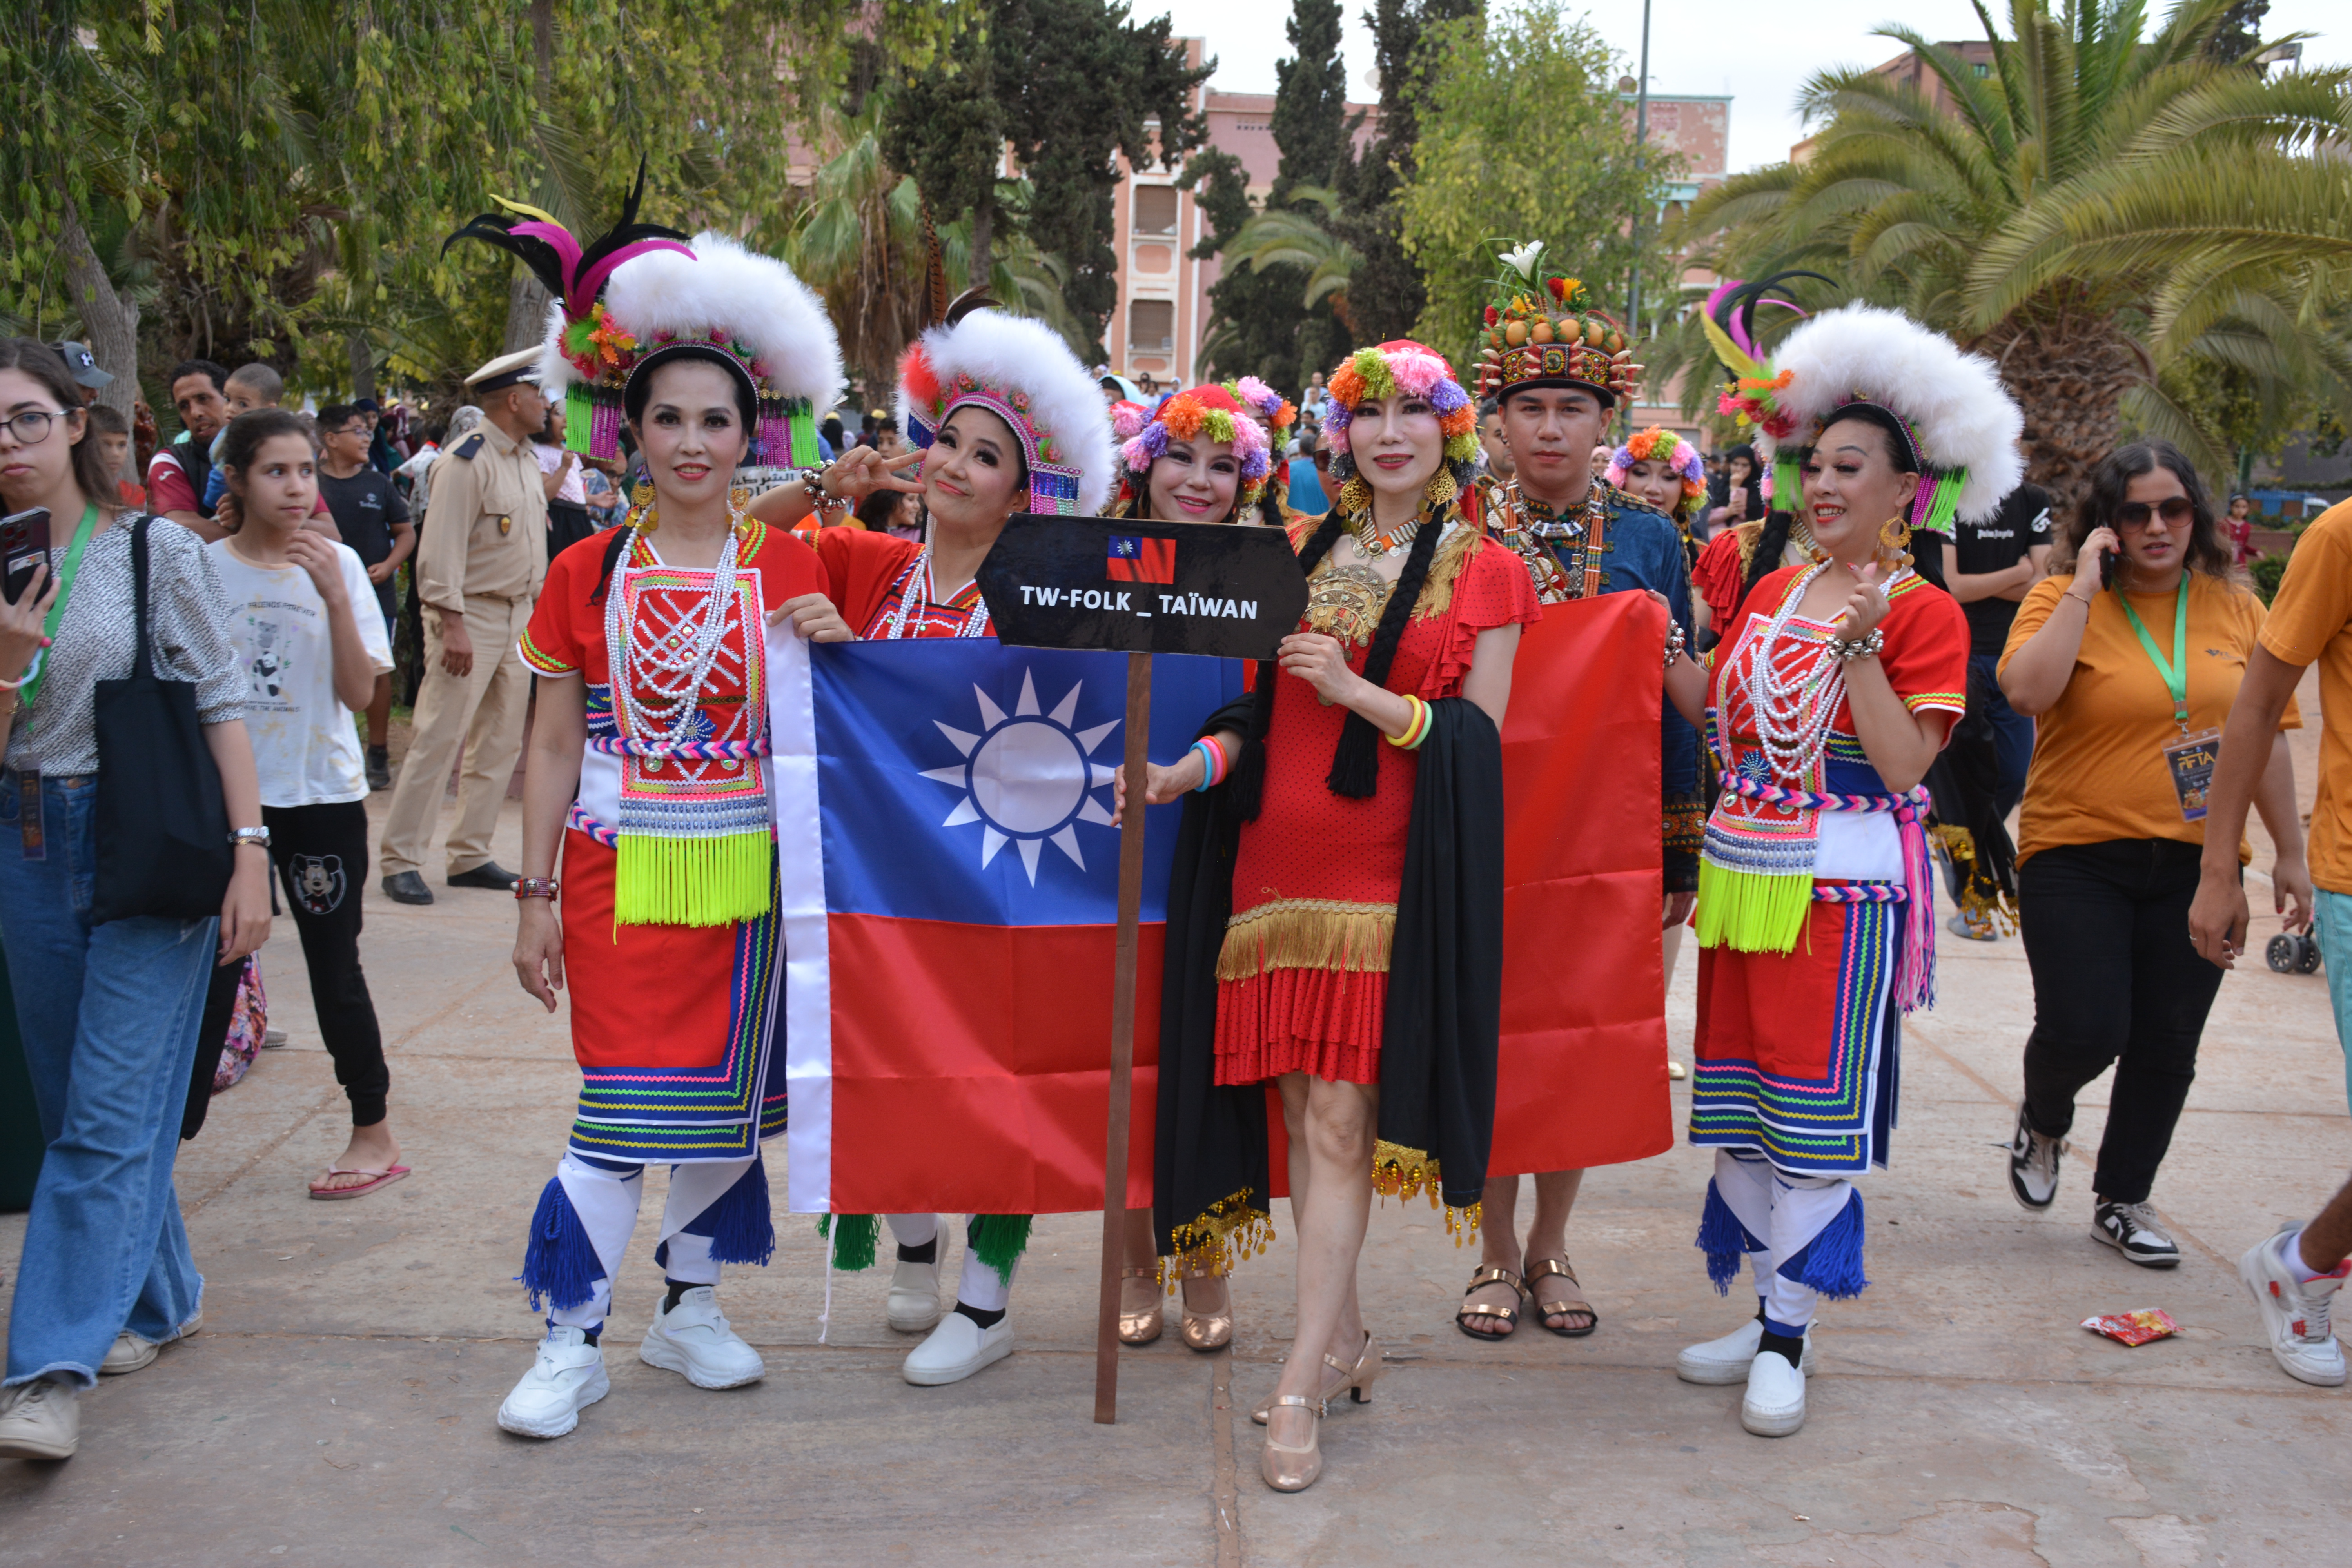 مسيرة للفرق الشعبية المغربية والعالمية بحديقة أكدال بأيت ملول على هامش مهرجان FIFTA